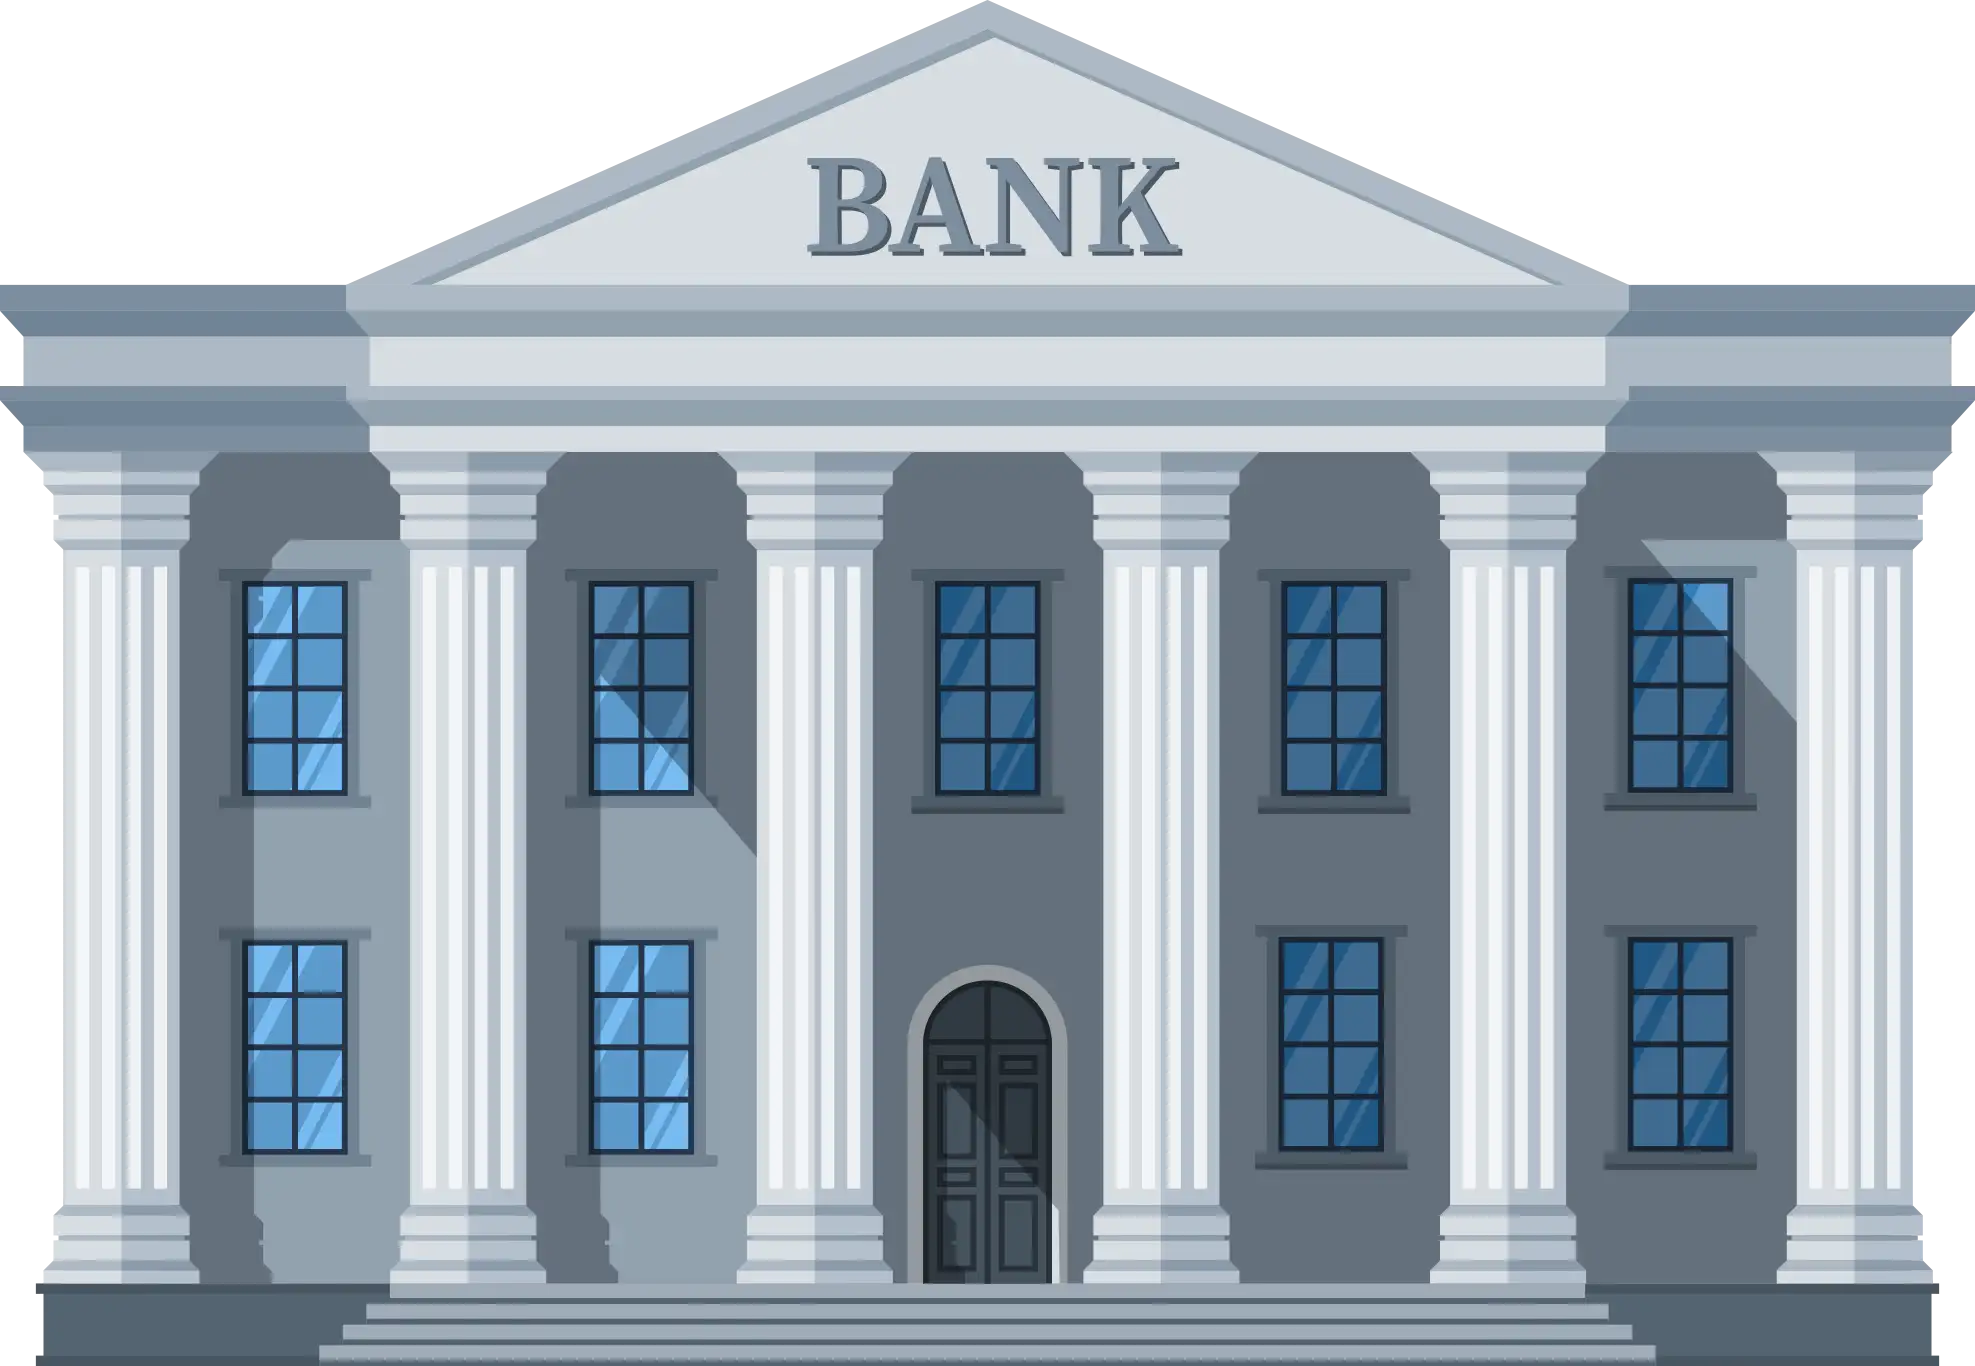 bank logo Ø¨Ø±ÙˆÚ©Ø± Ù¾Ø§Ú©Øª Ø¢Ù¾Ø´Ù†